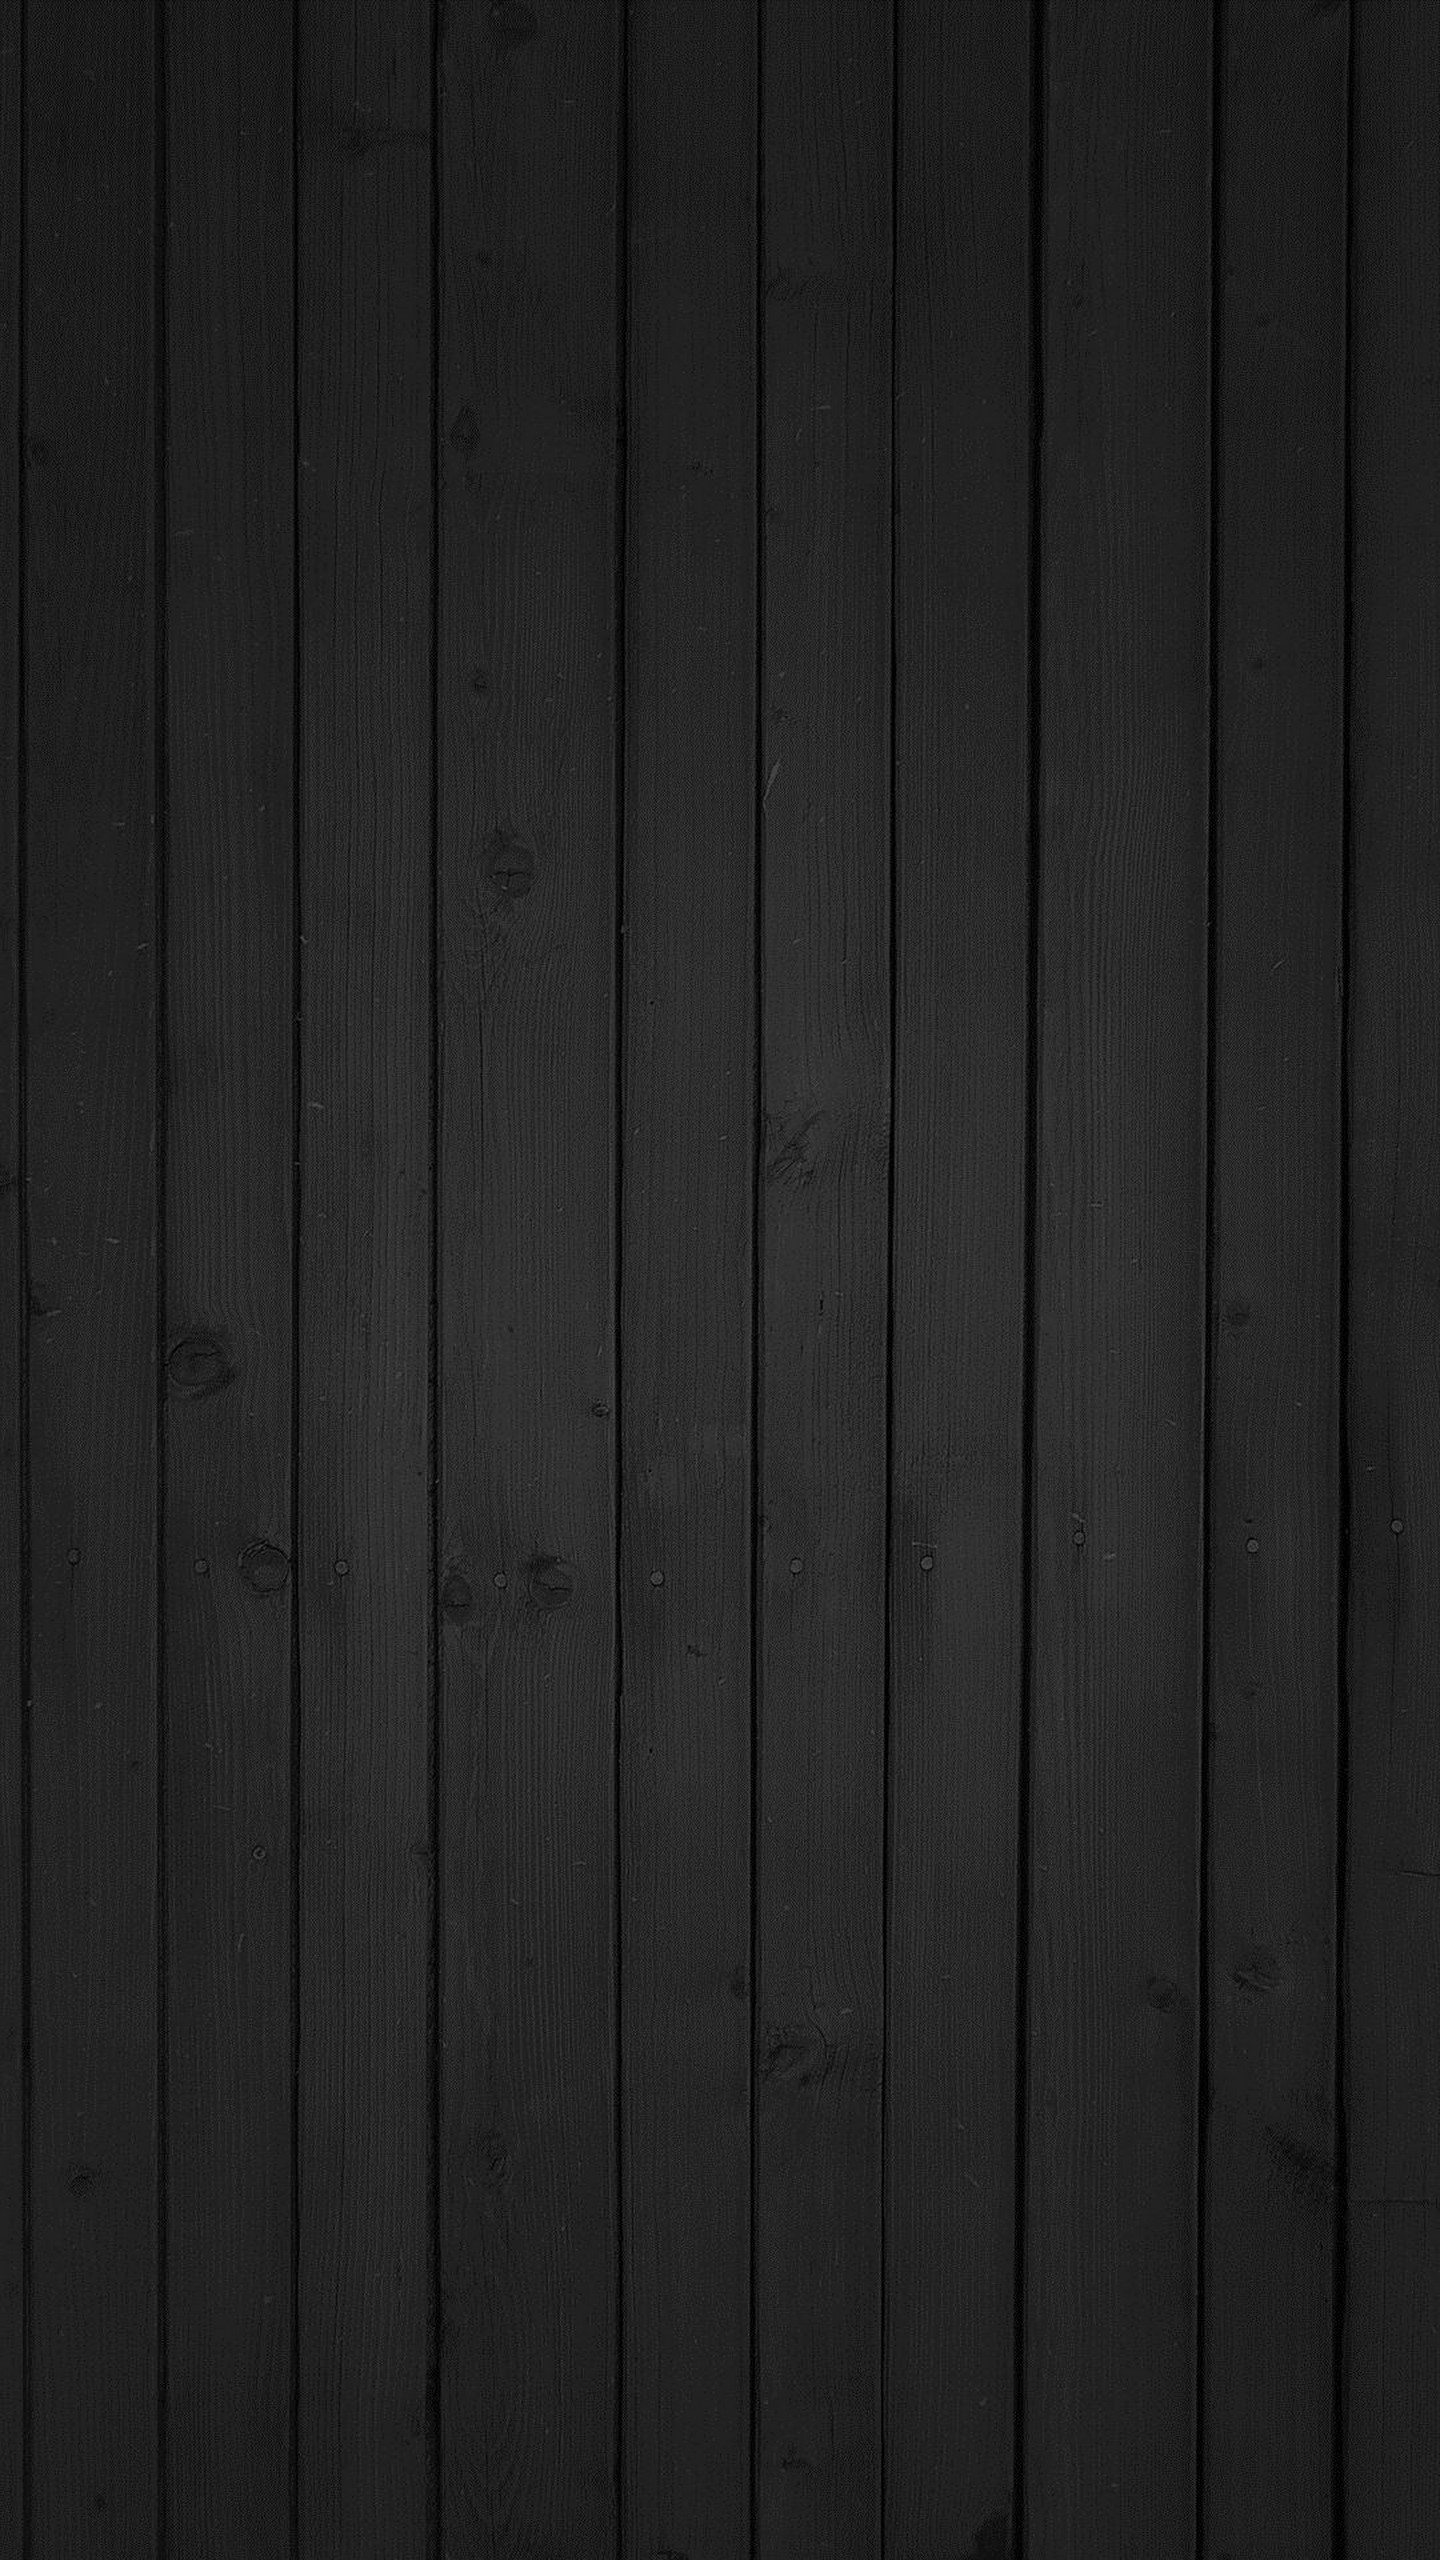 Vertical Black Wood Beams Galaxy Note 4 Wallpaper Quad HD 1440x2560